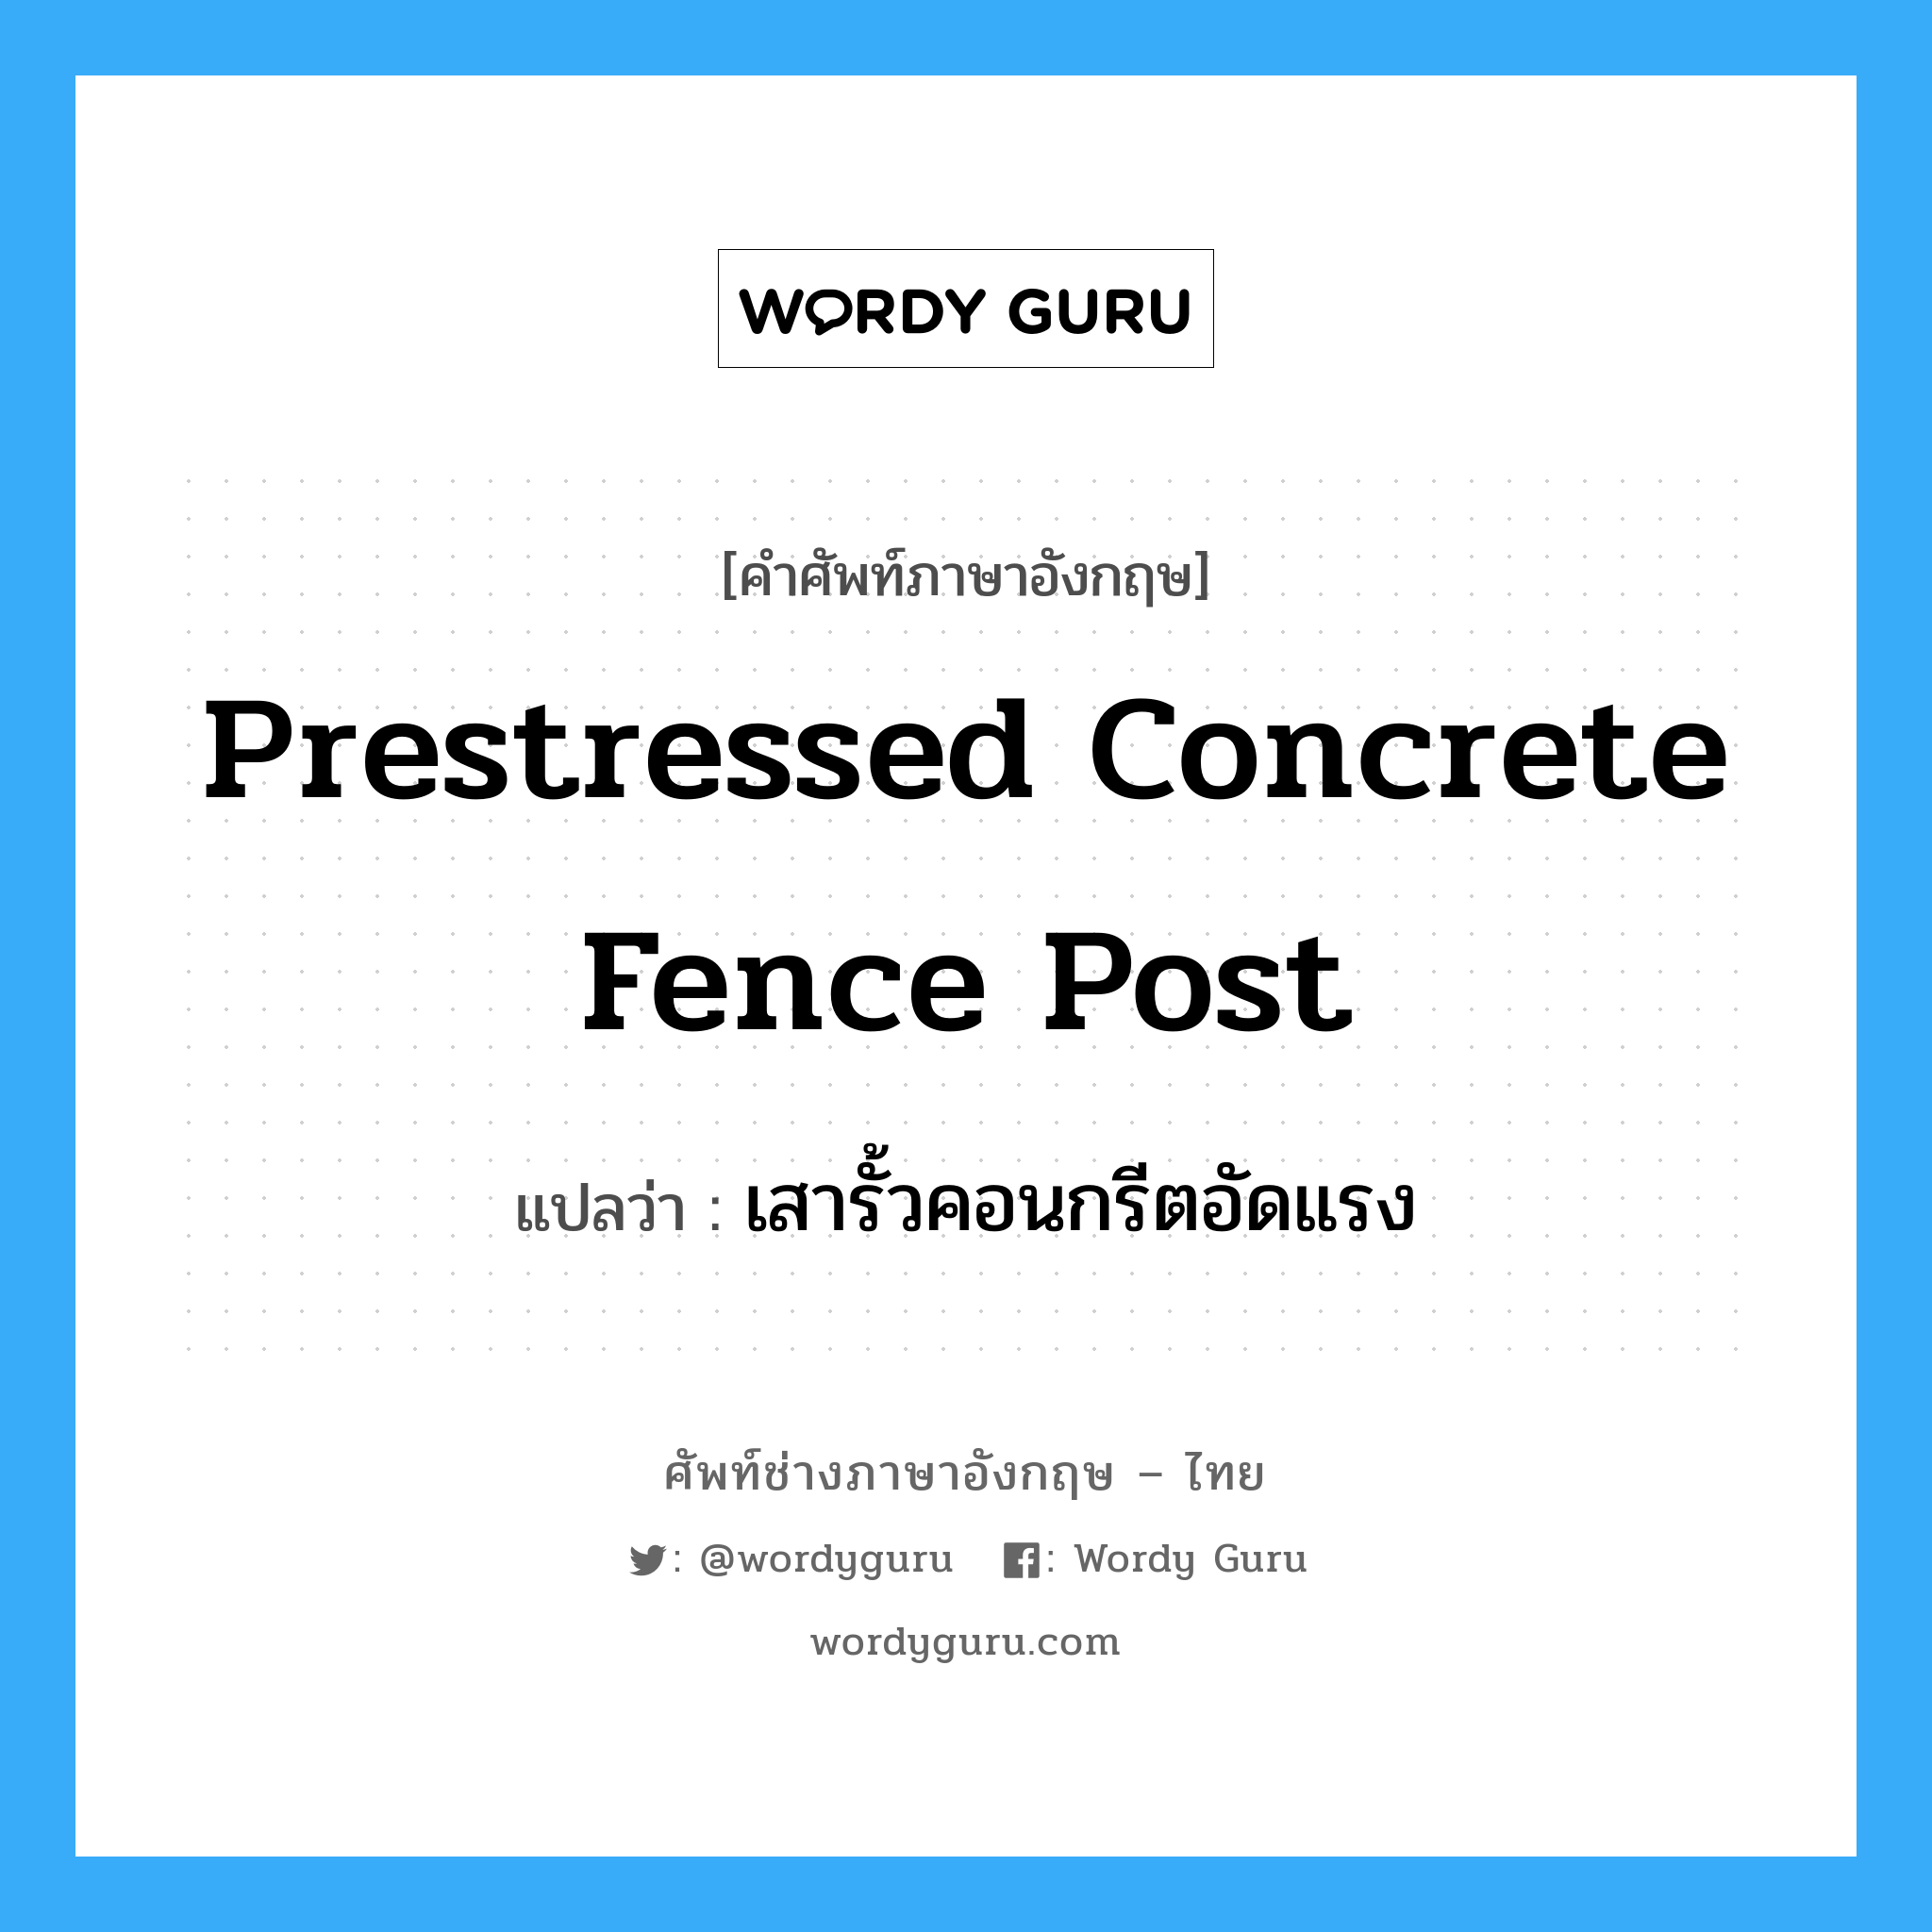 เสารั้วคอนกรีตอัดแรง ภาษาอังกฤษ?, คำศัพท์ช่างภาษาอังกฤษ - ไทย เสารั้วคอนกรีตอัดแรง คำศัพท์ภาษาอังกฤษ เสารั้วคอนกรีตอัดแรง แปลว่า prestressed concrete fence post